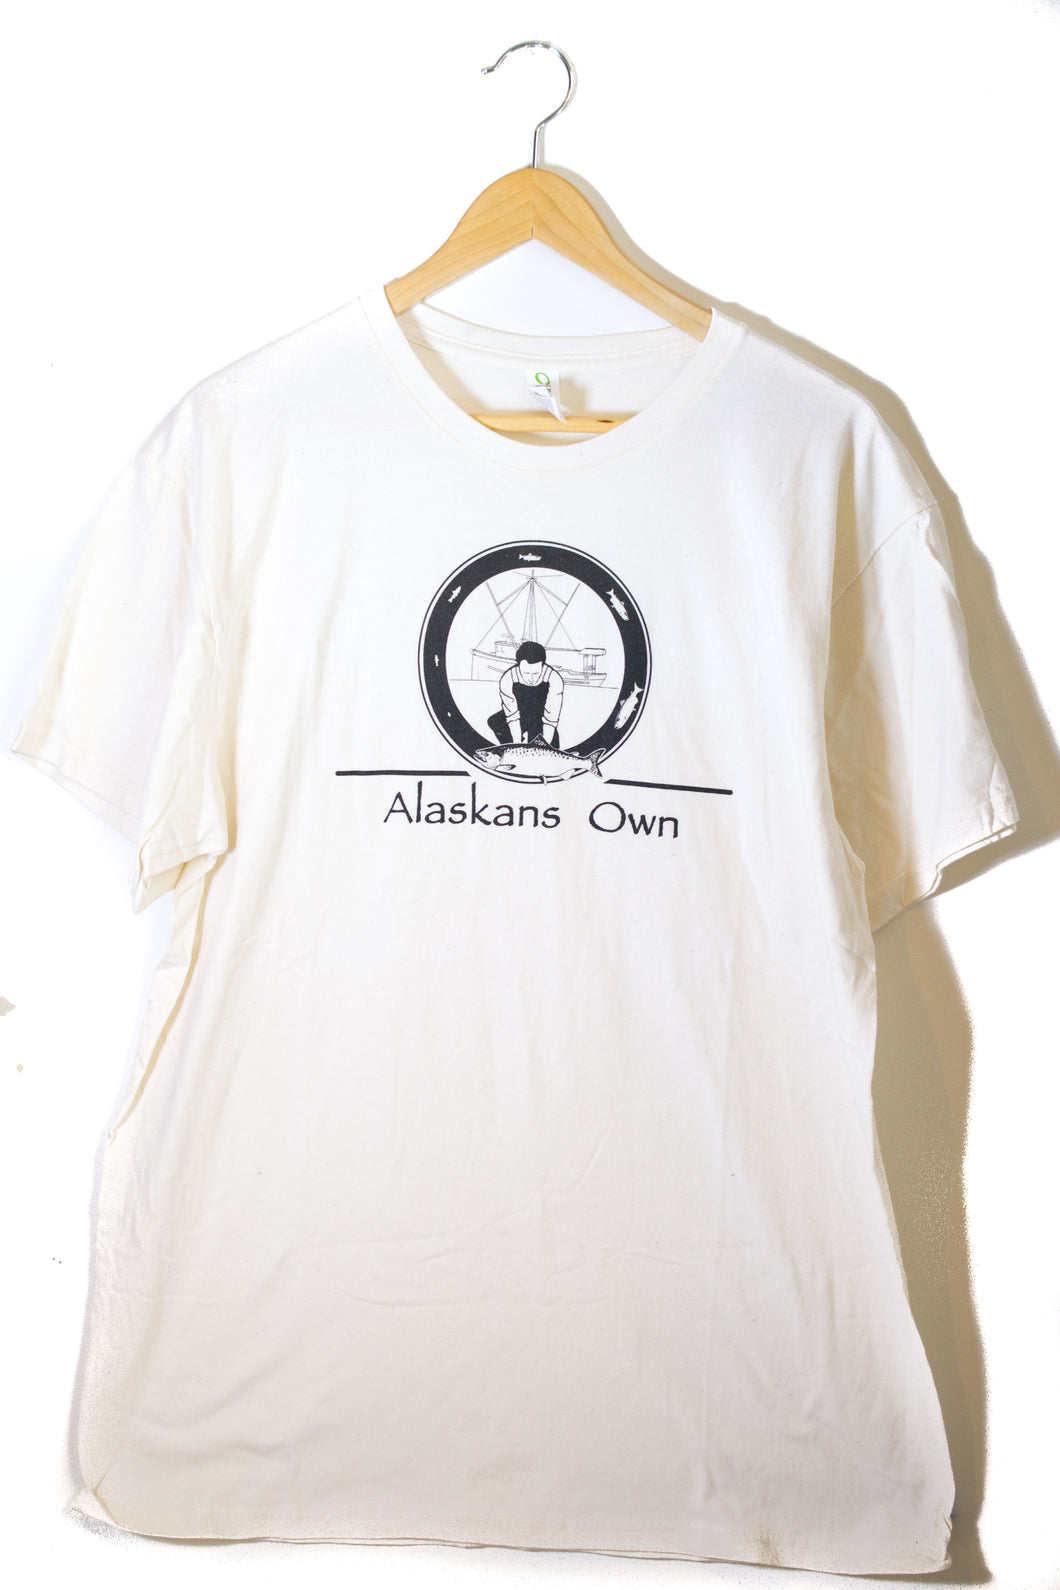 Alaskans Own Tee Shirt